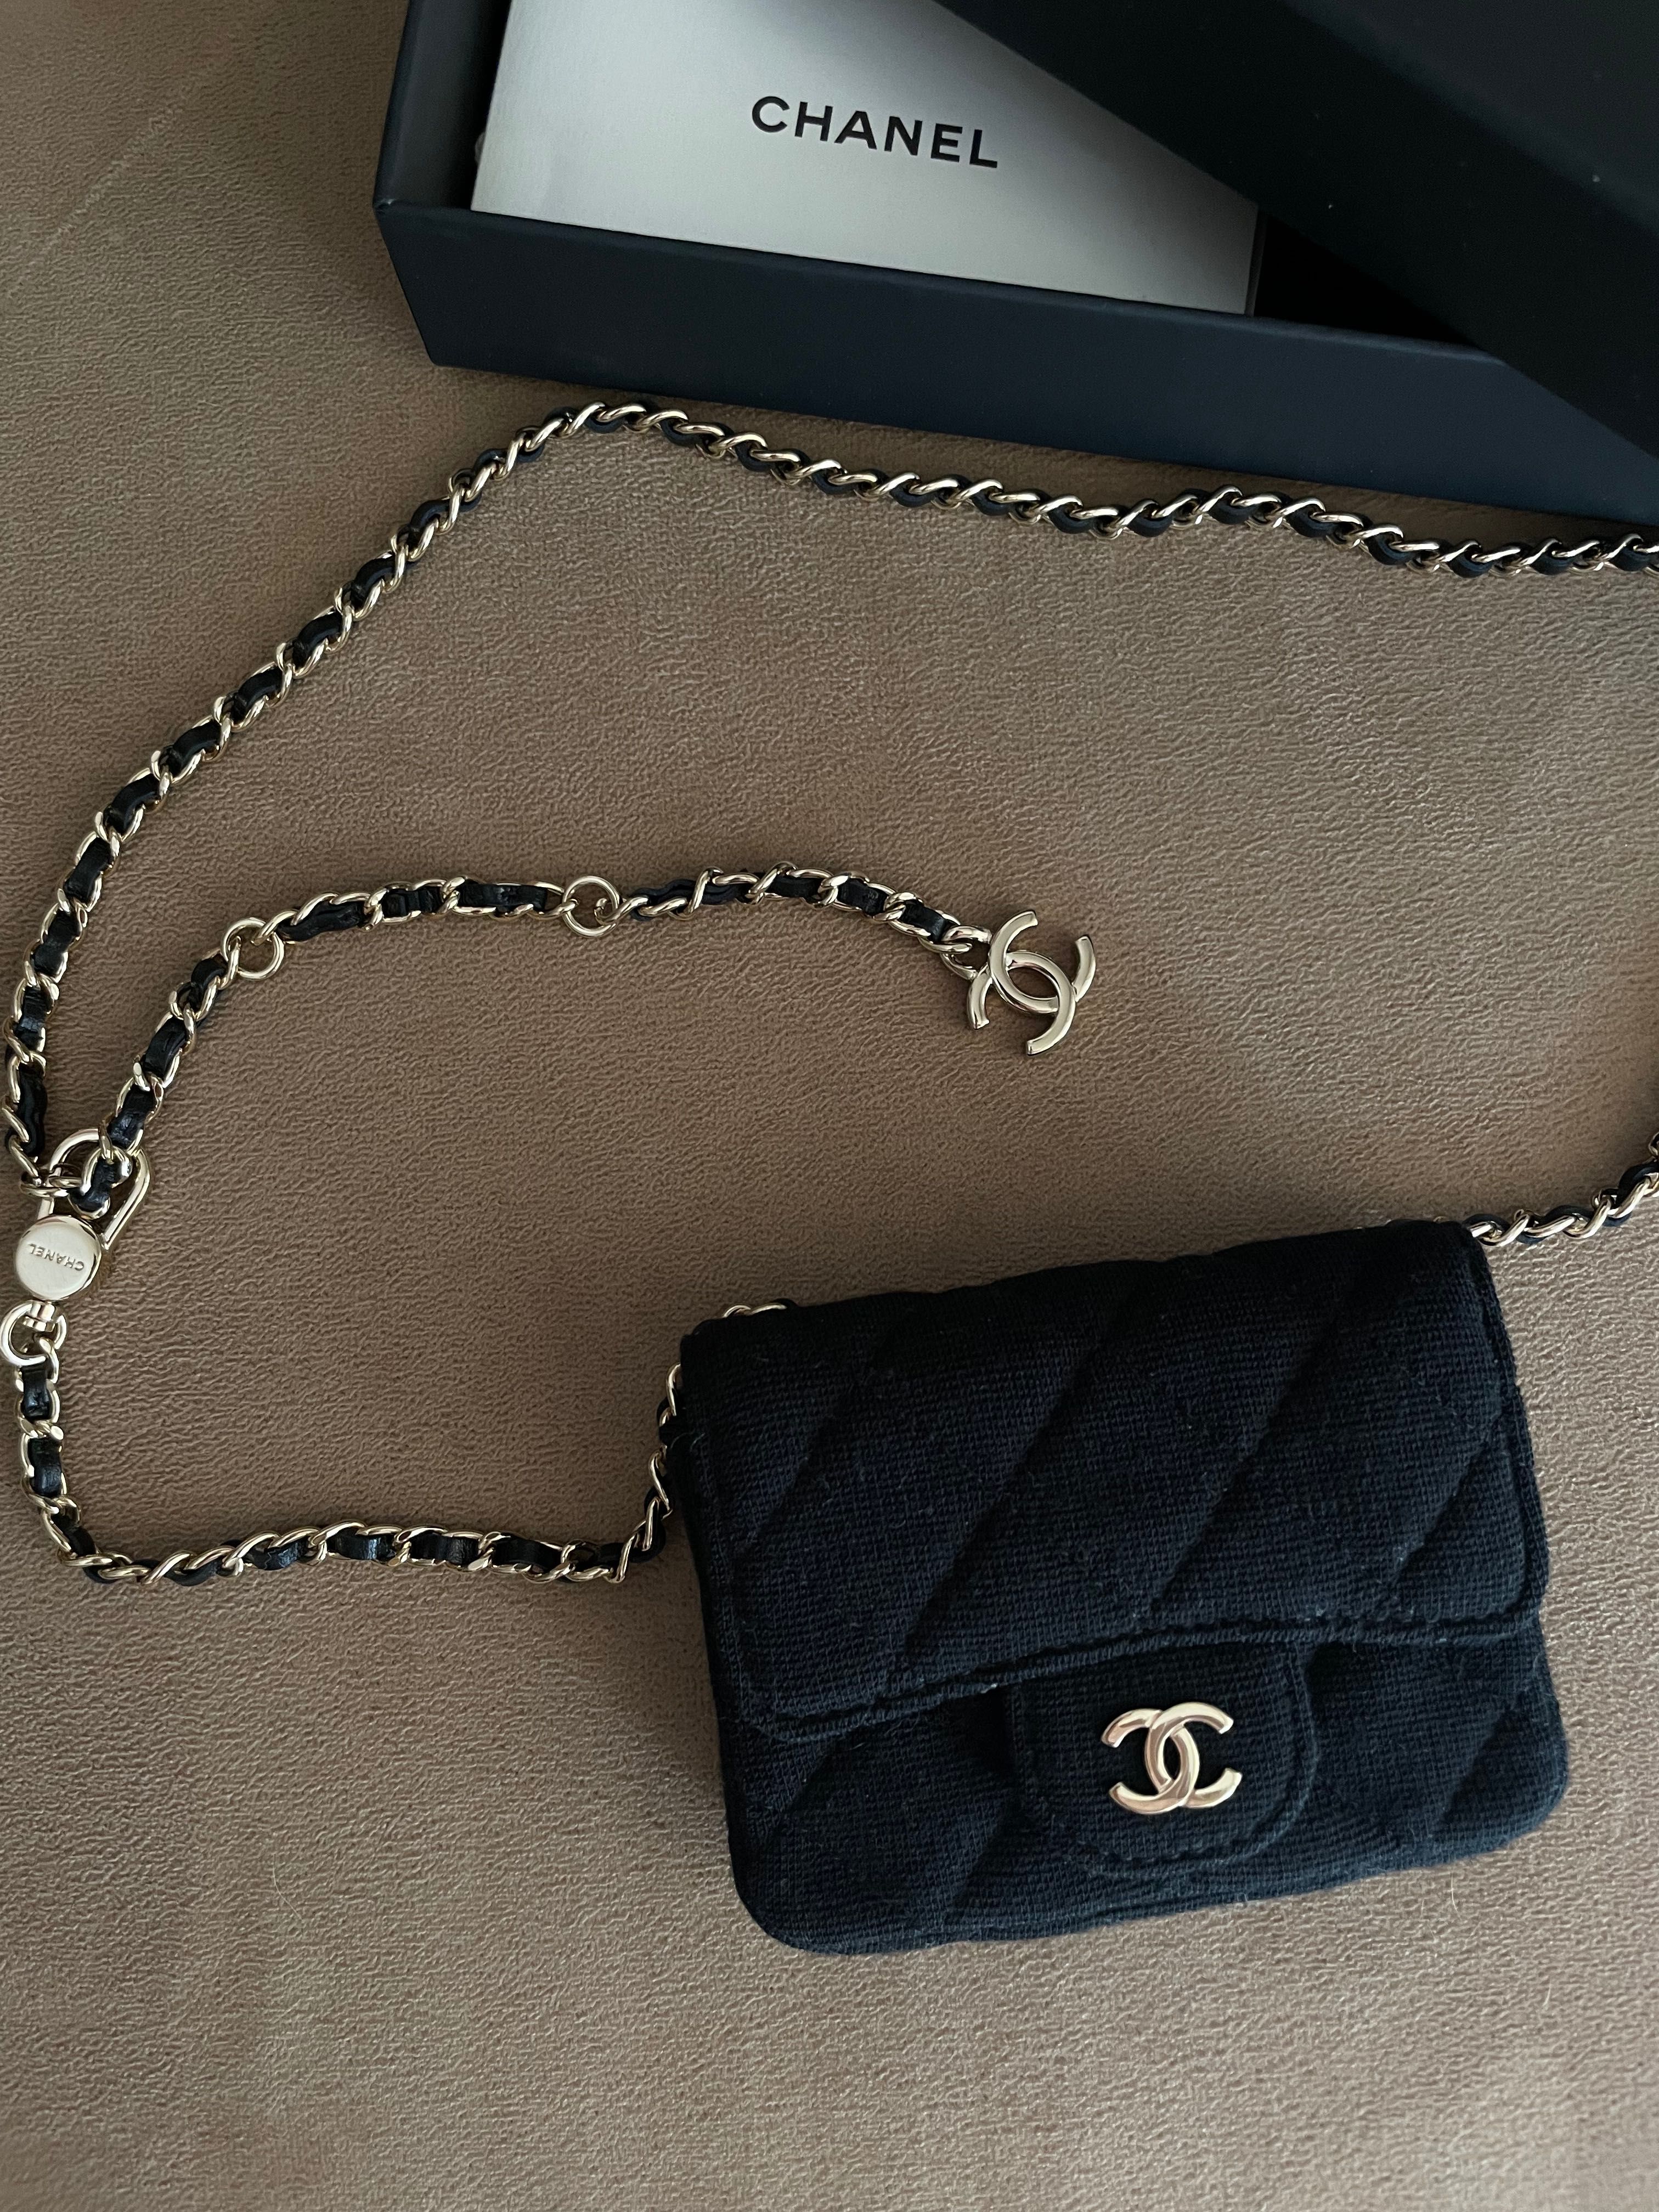 Нова оригінальна сумка - пояс Chanel